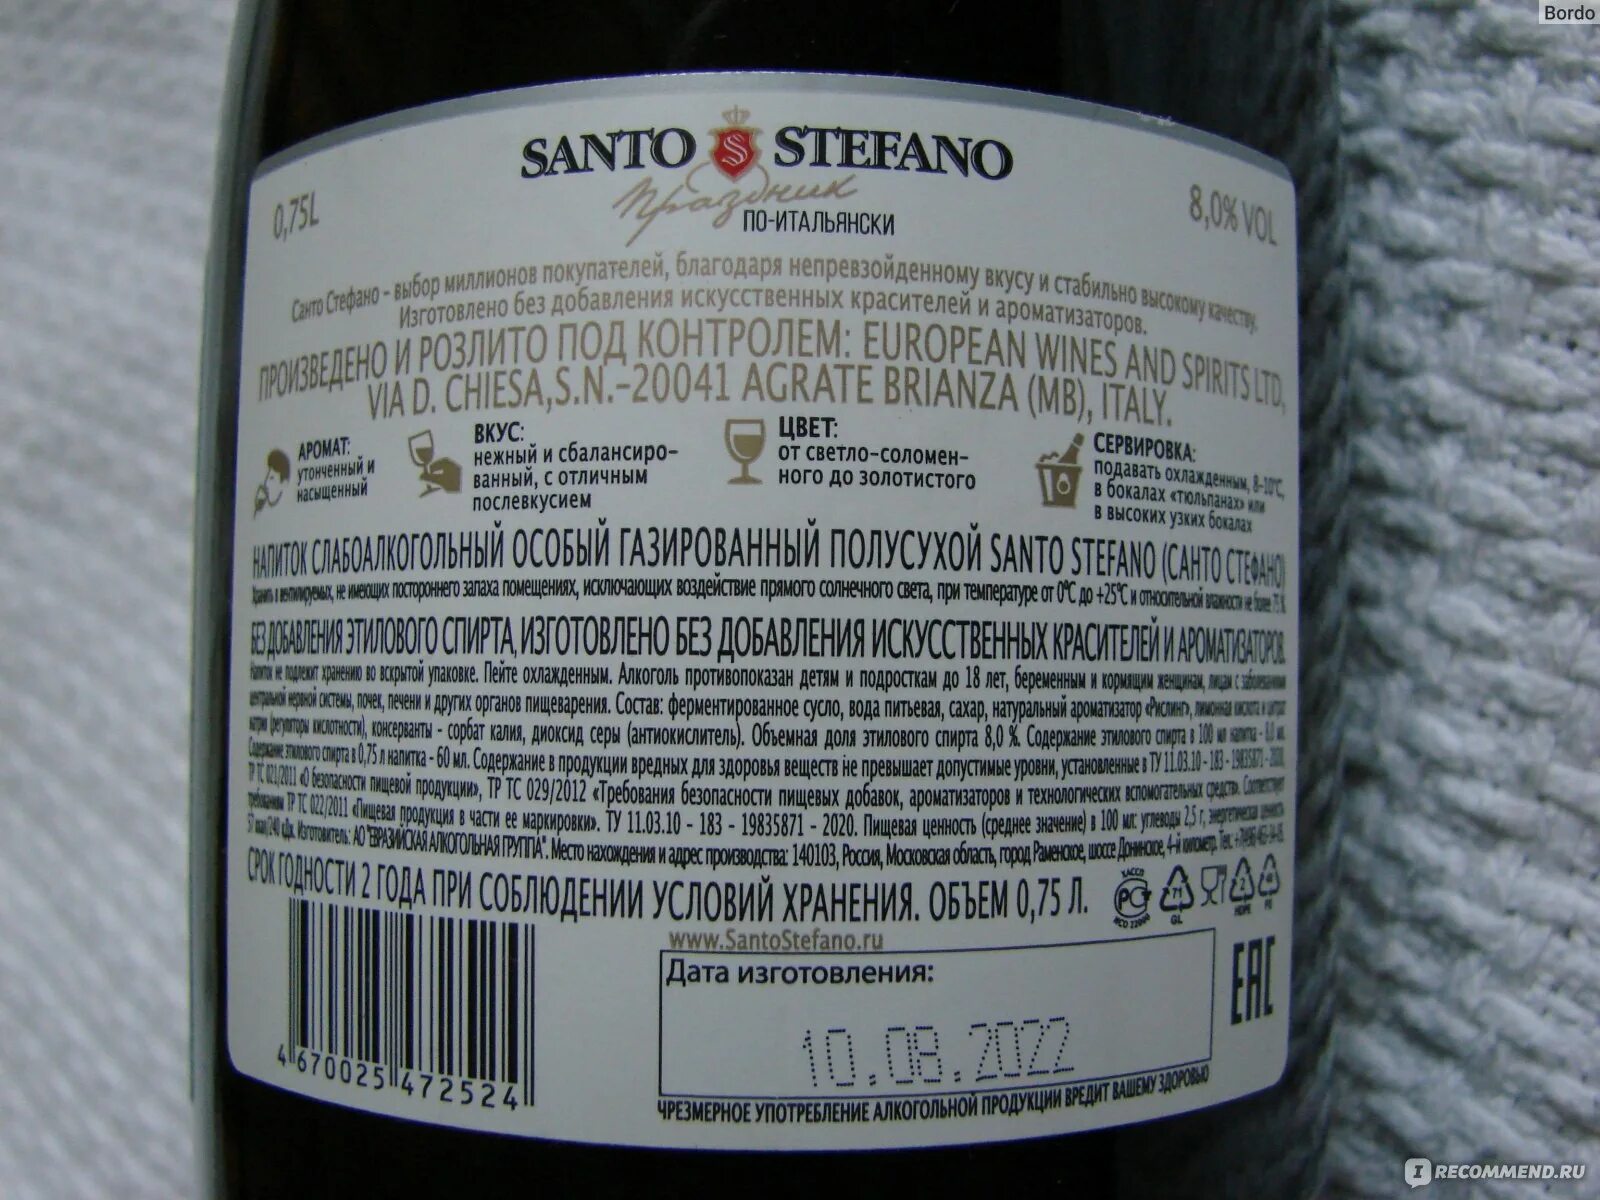 Санто стефано шампанское вкусы. Санто Стефано 13.5 градусов. Алкогольная газировка. Газированный винный напиток мартини семи Дольче бел. Напиток плодовый алкогольный газированный Mariko Bianco белое сладкое 075.